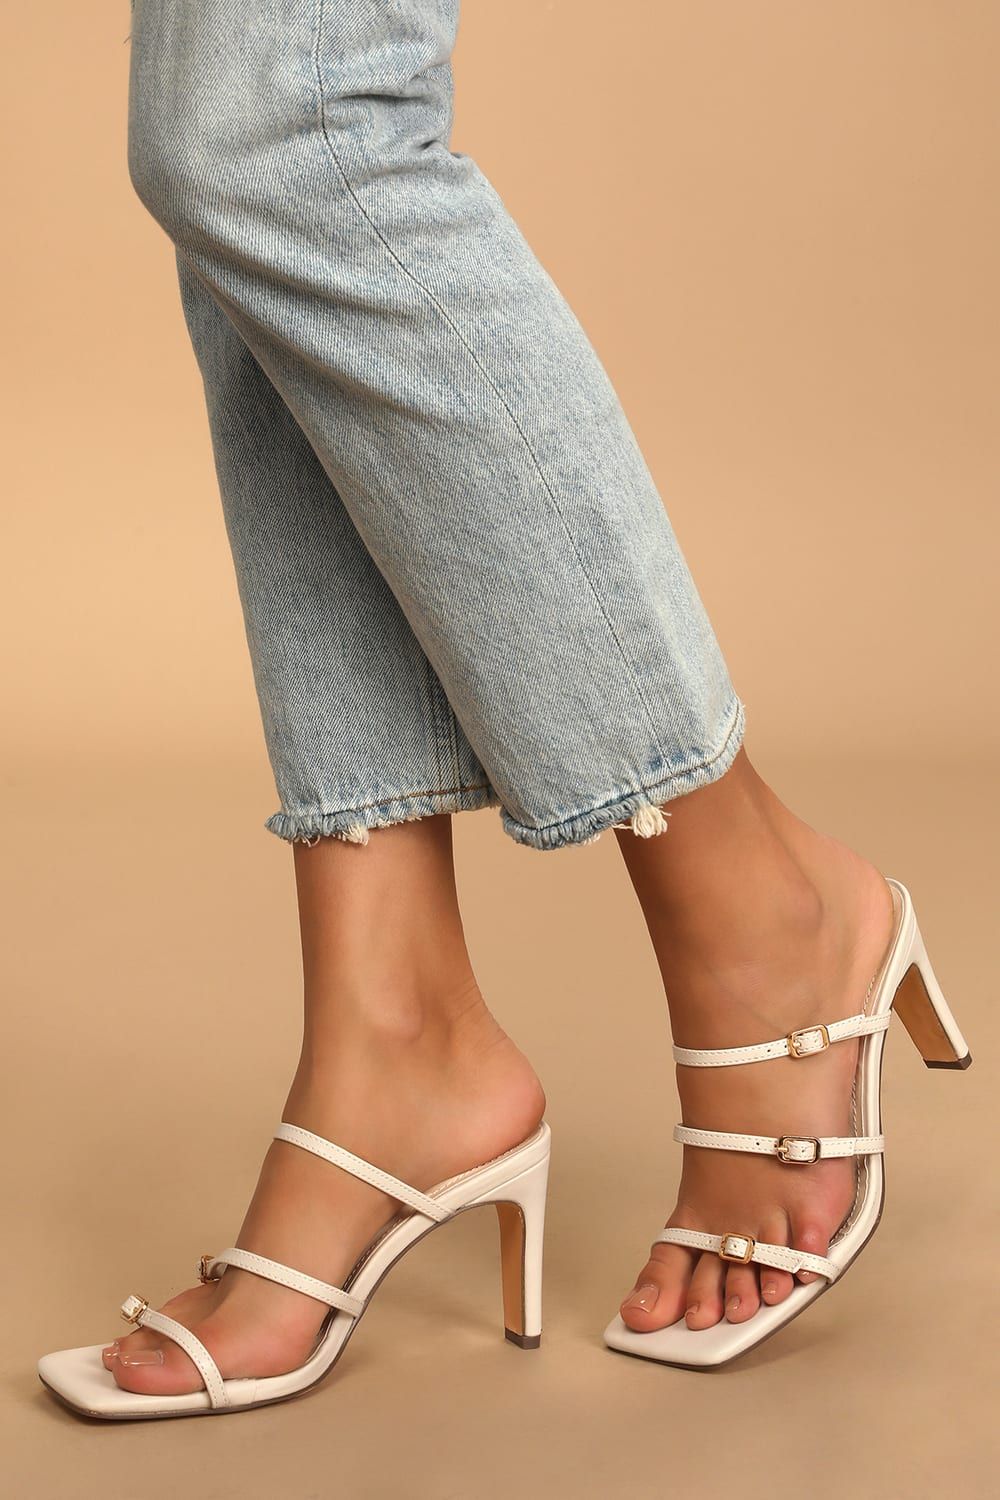 Jayjae White Square Toe Buckled High Heel Sandals | Lulus (US)